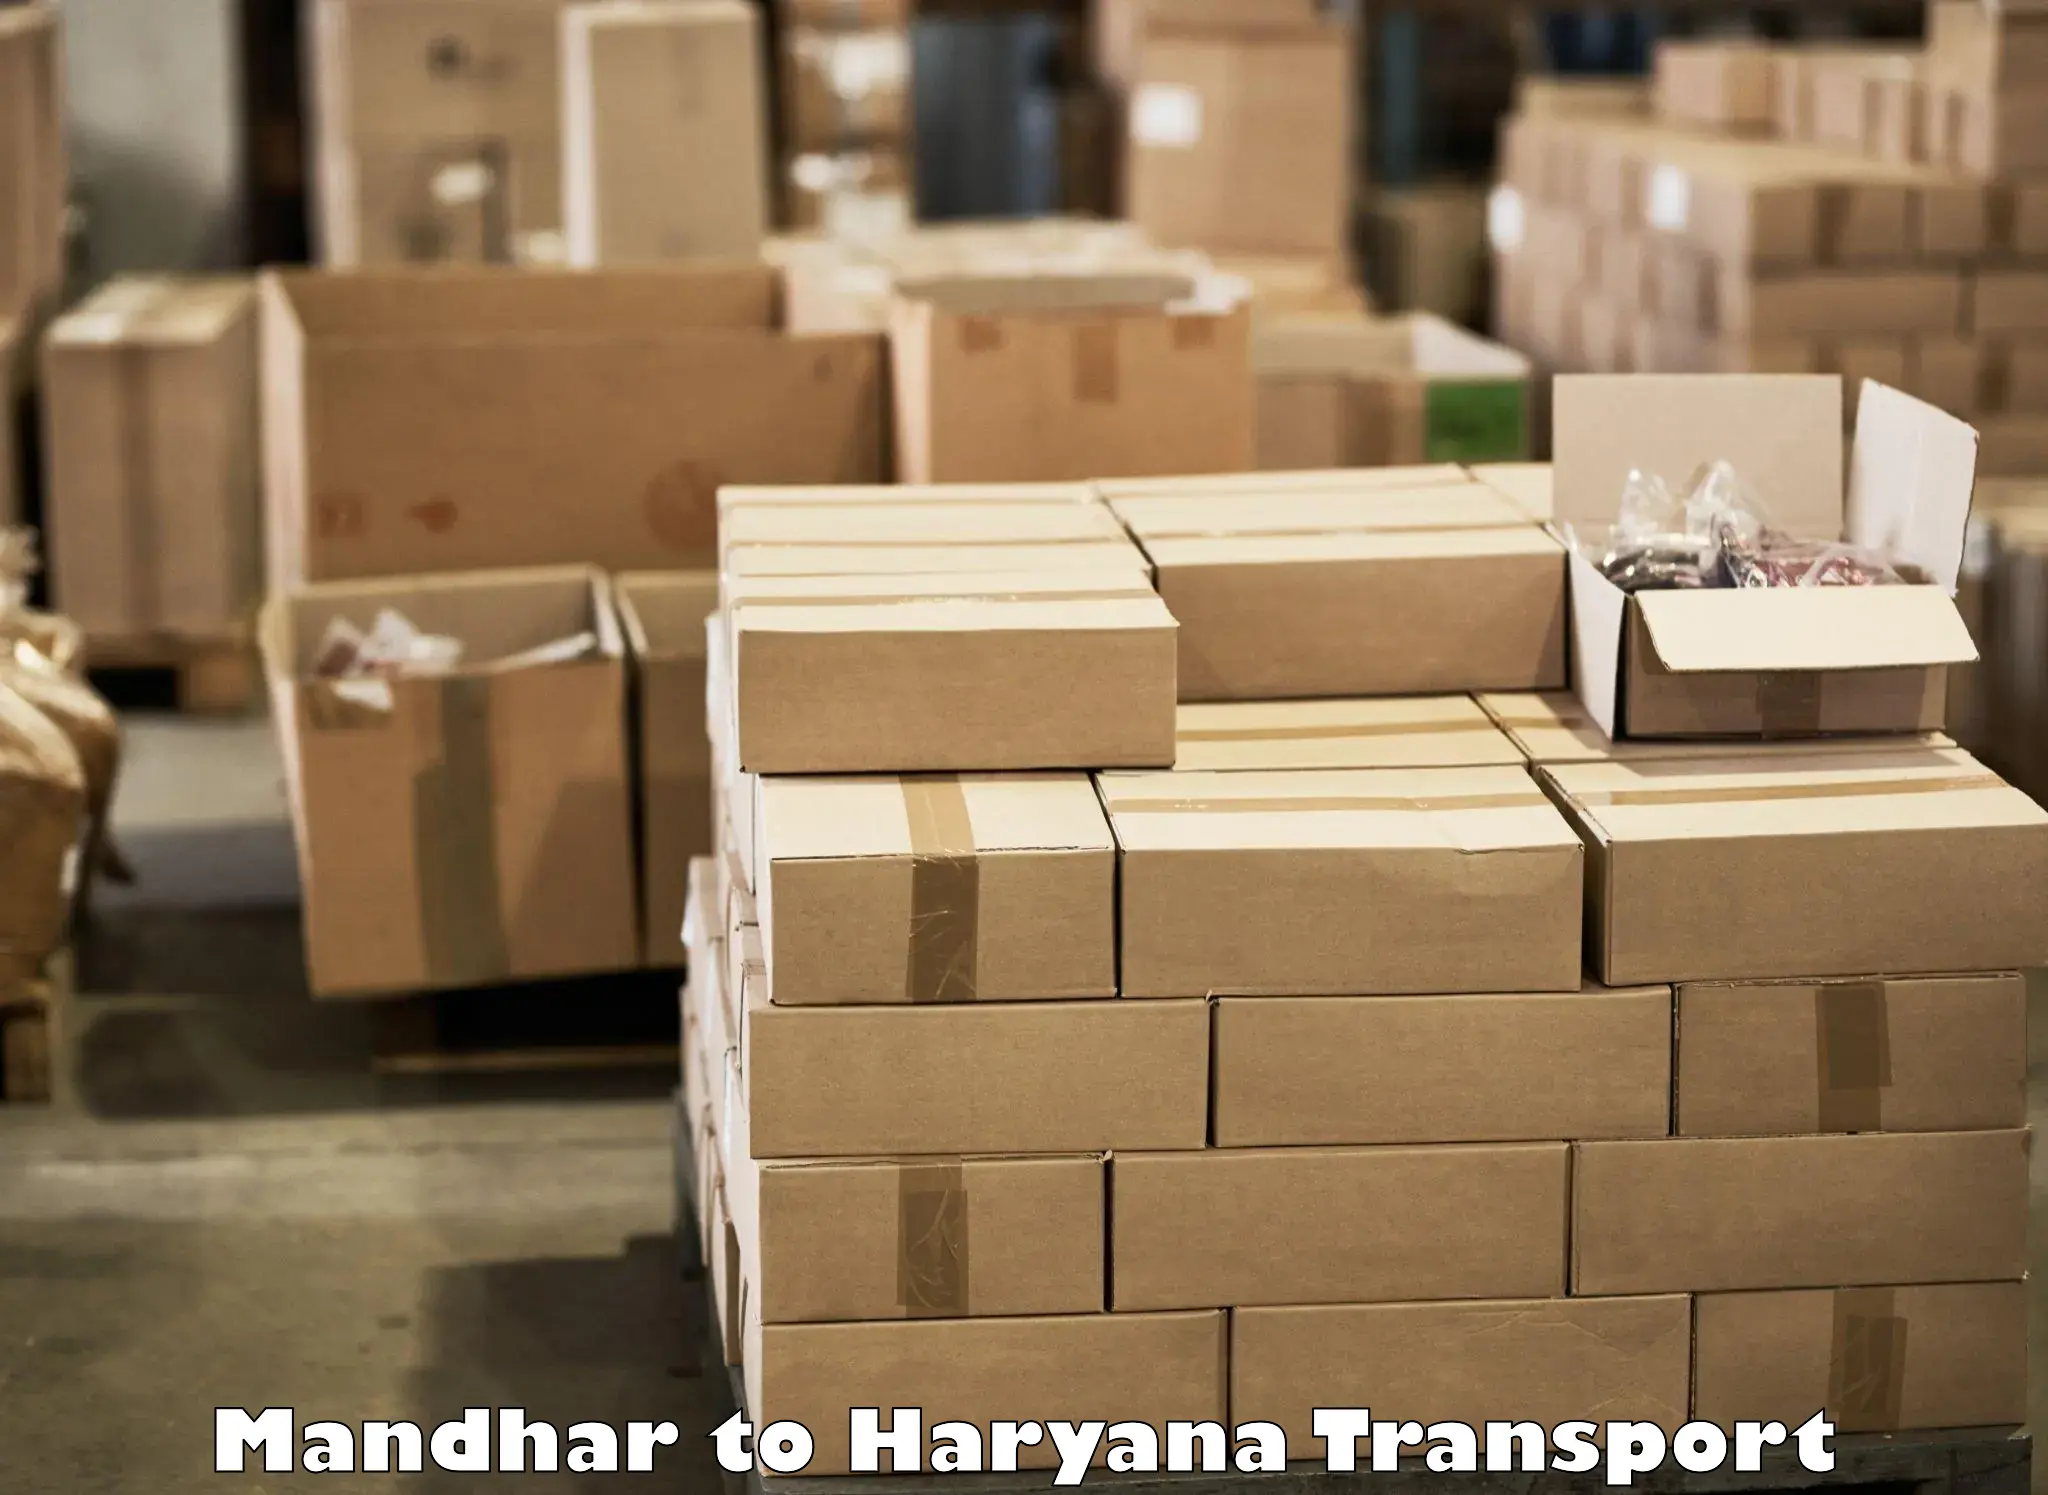 Lorry transport service Mandhar to Bilaspur Haryana